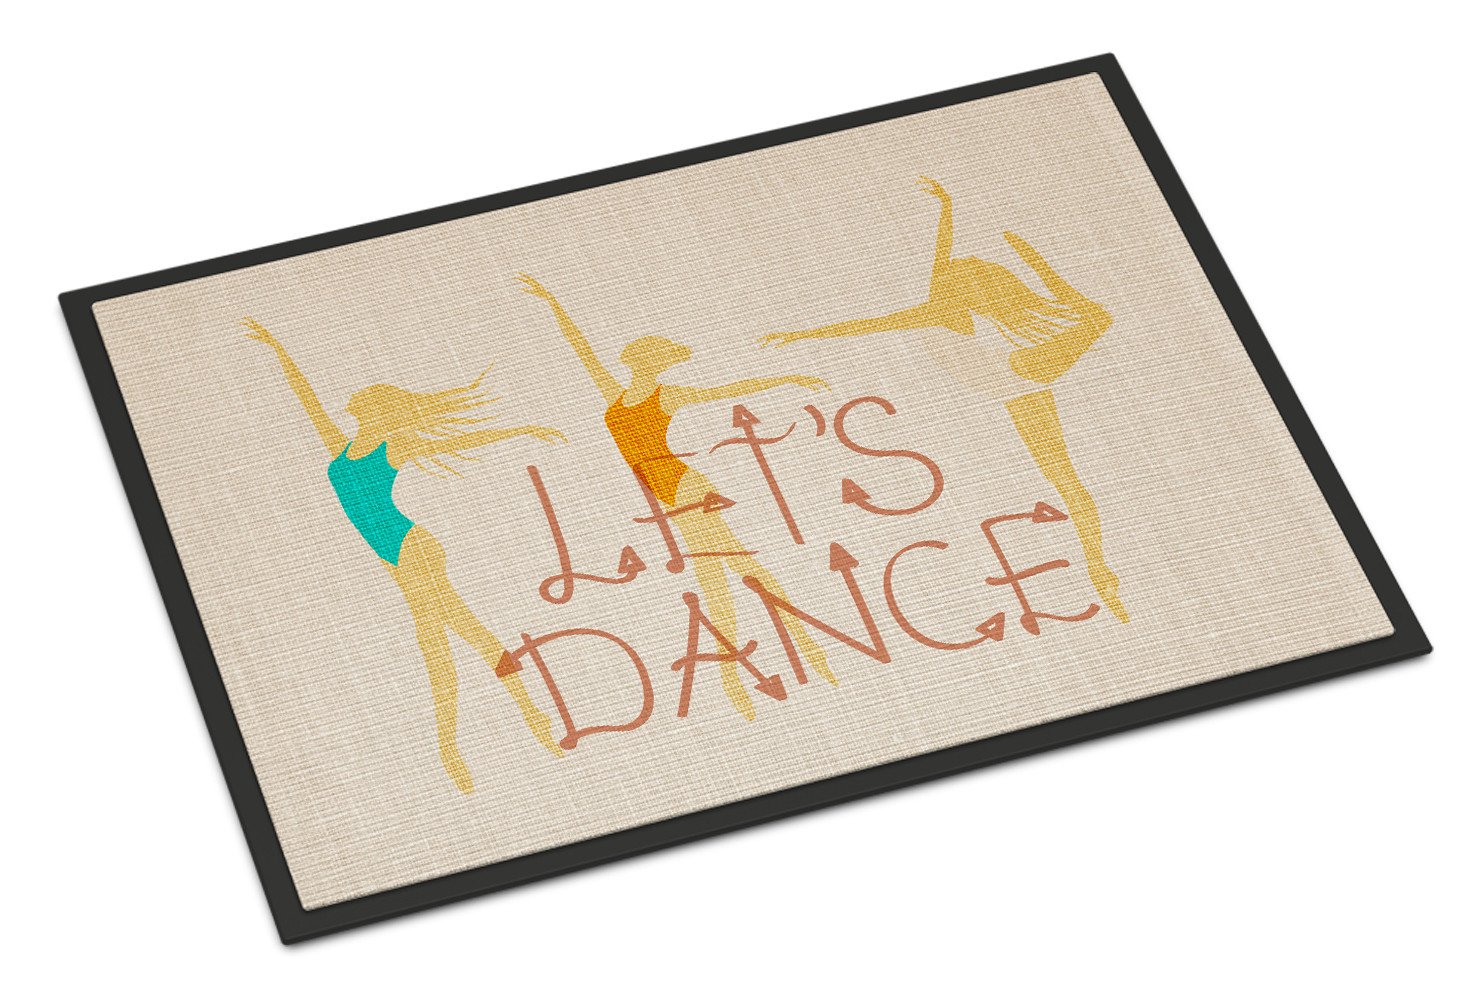 Let's Dance Linen Light Indoor or Outdoor Mat 24x36 BB5376JMAT by Caroline's Treasures